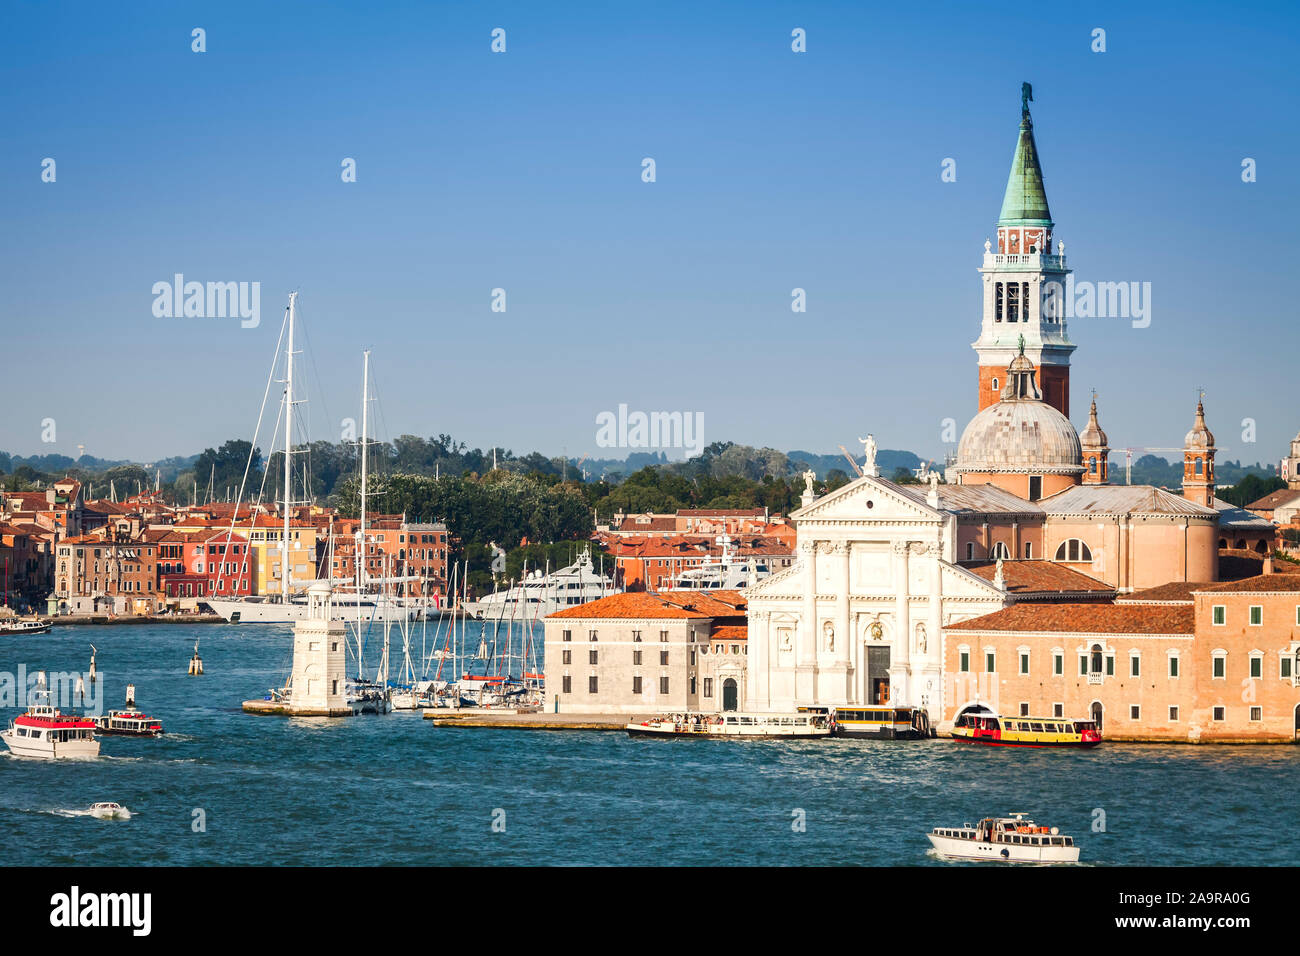 Das schoene Venedig in Italien Stock Photo